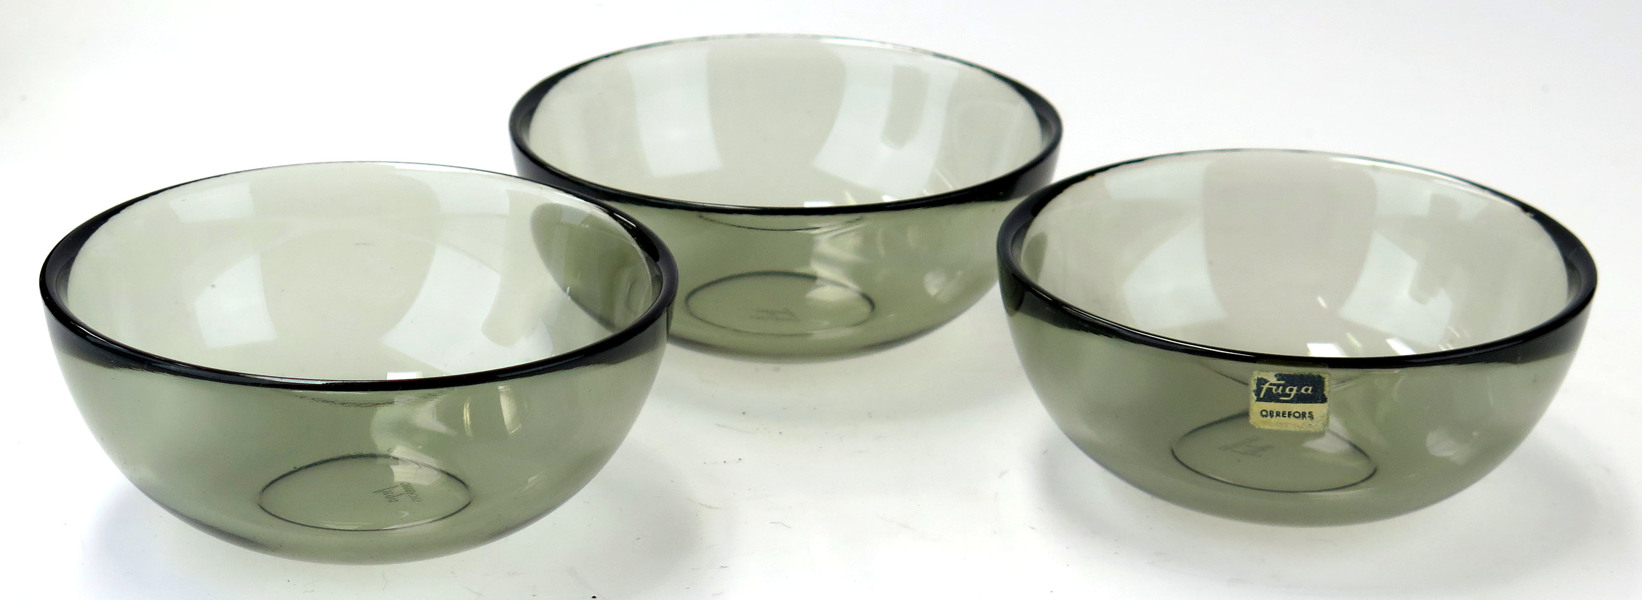 Palmquist, Sven för Orrefors, skålar 3 st, gråtonat glas, Fuga, design 1953, _1300a_8d82ef7ea5854f8_lg.jpeg